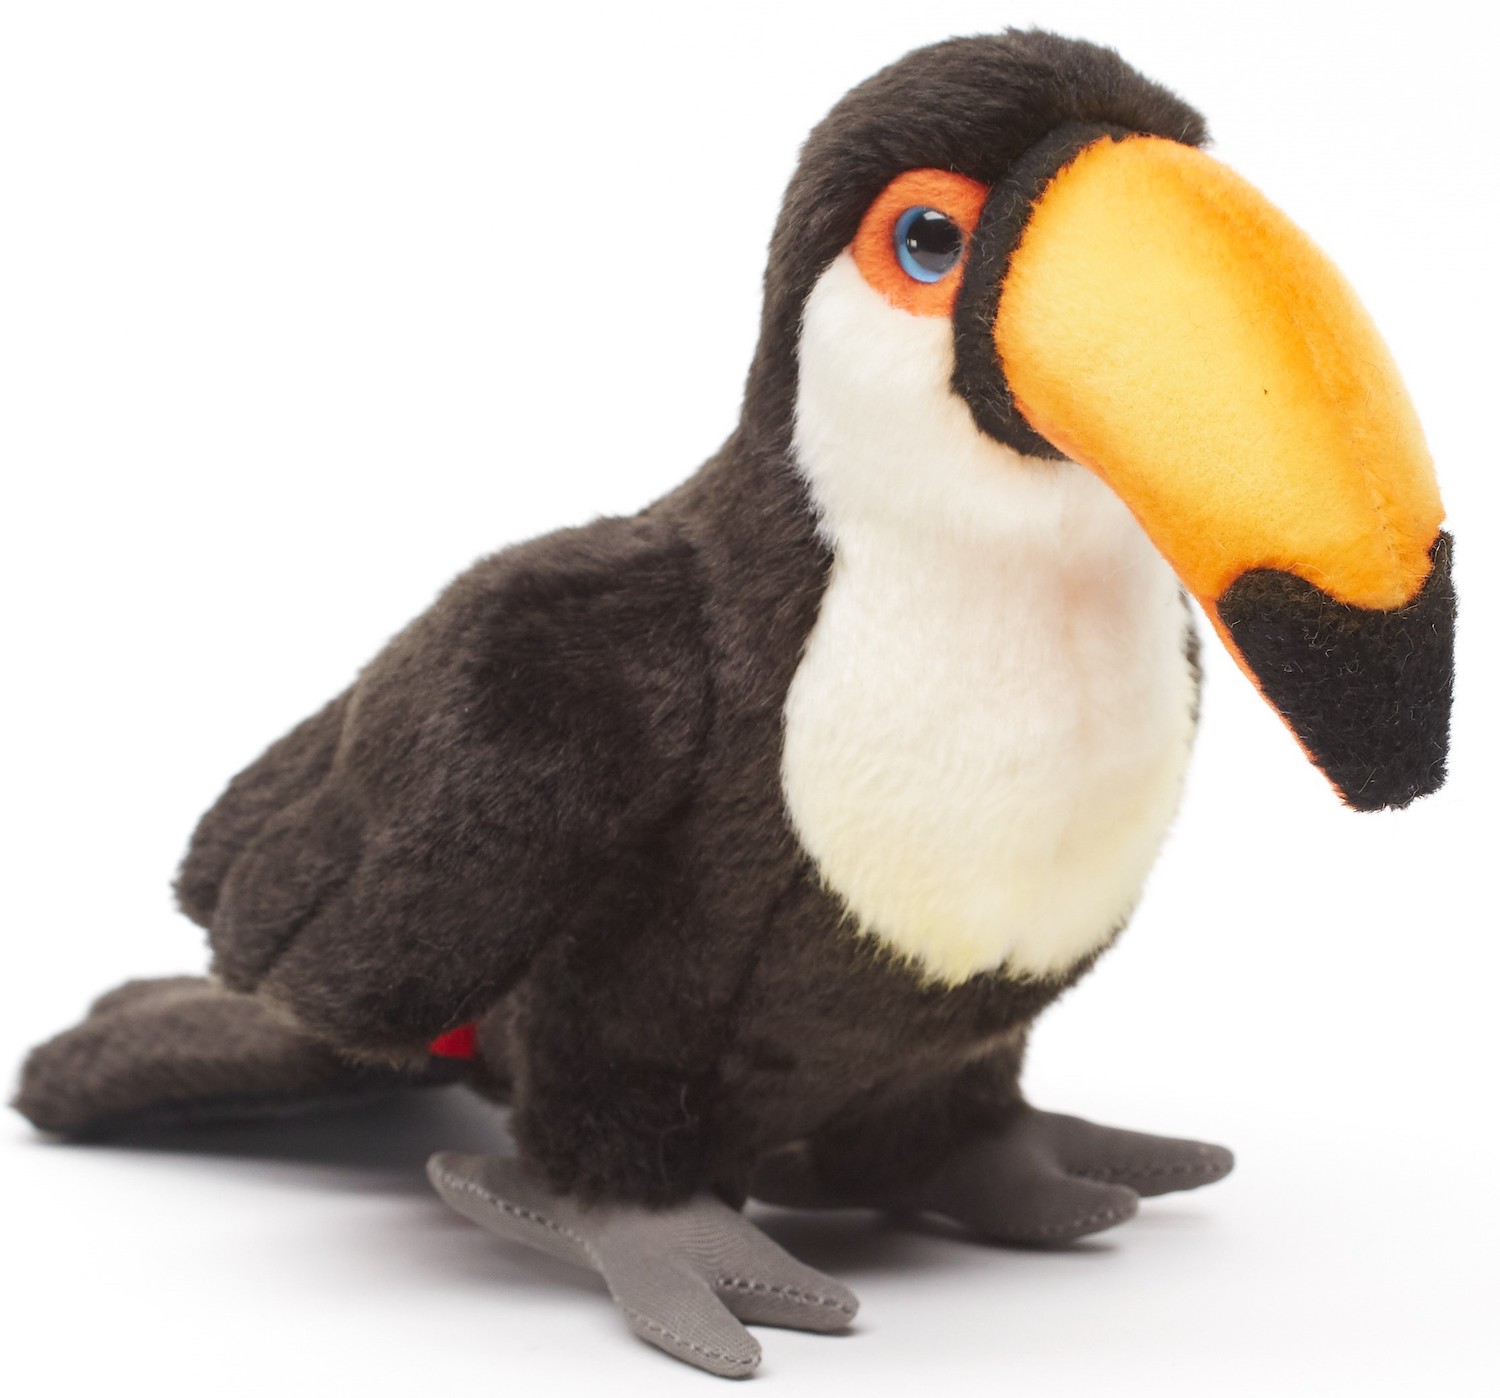 Uni-Toys - giant toucan - 18 cm (height) - bird - plush toy, cuddly toy 